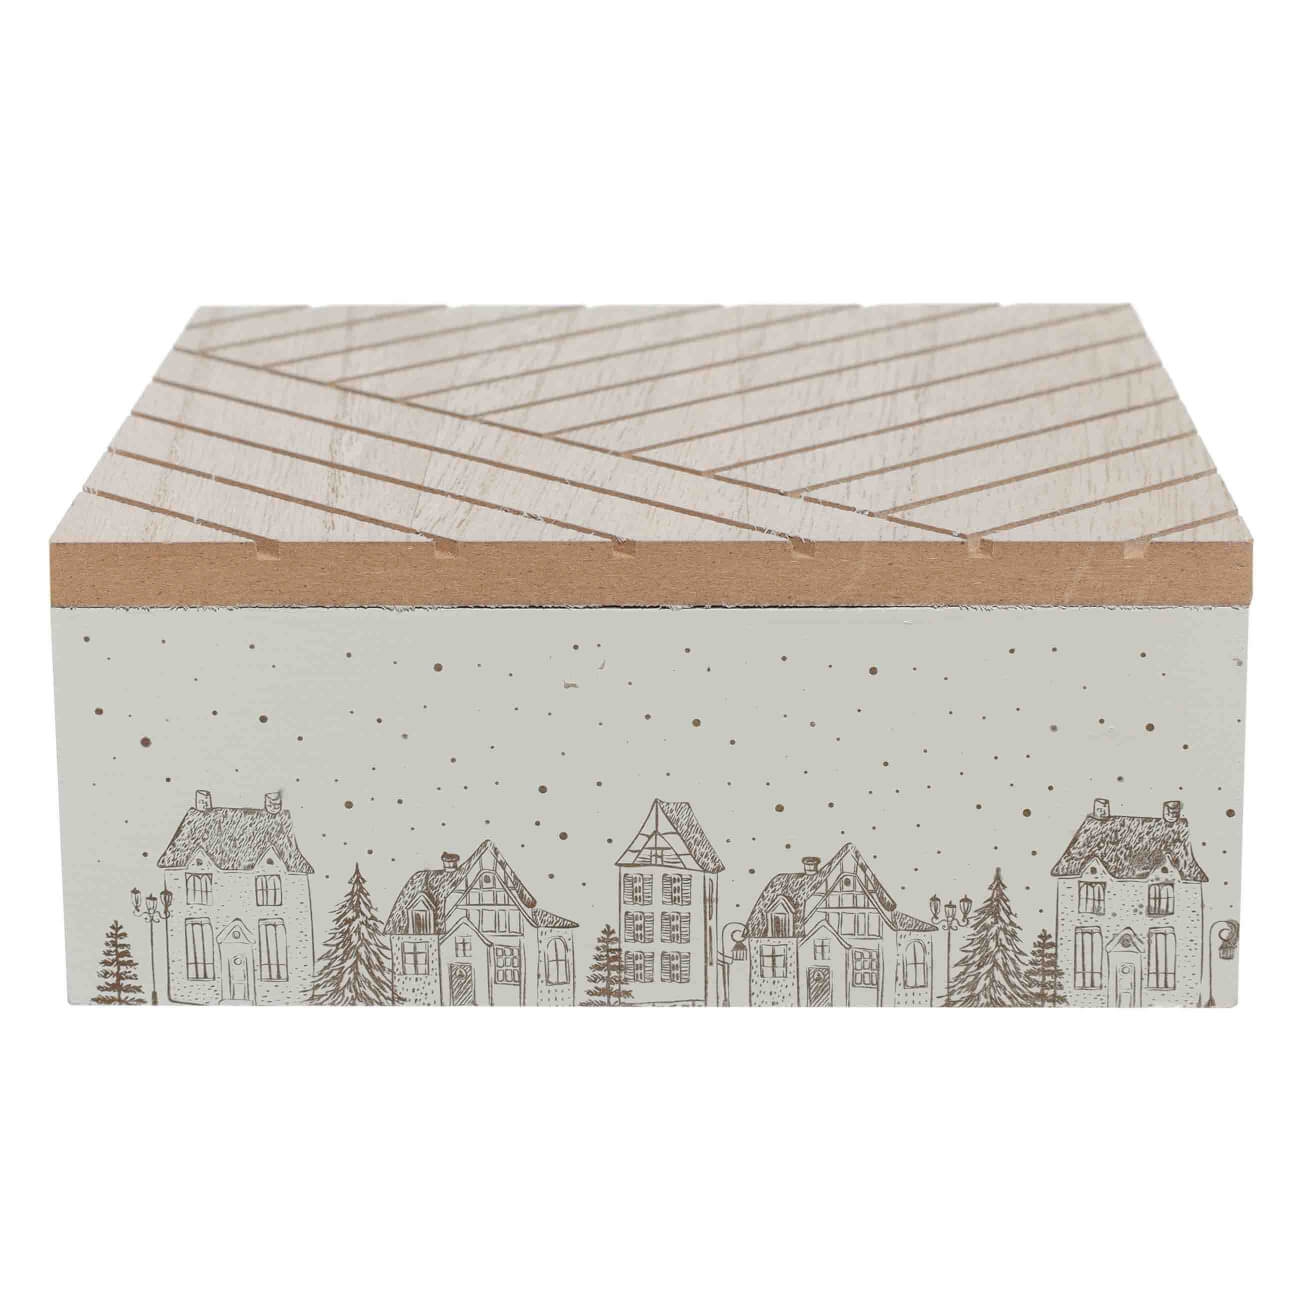 Коробка для чая, 17х17 см, 4 отд, дерево, квадратная, бежевая, Домики, Forest house изображение № 1